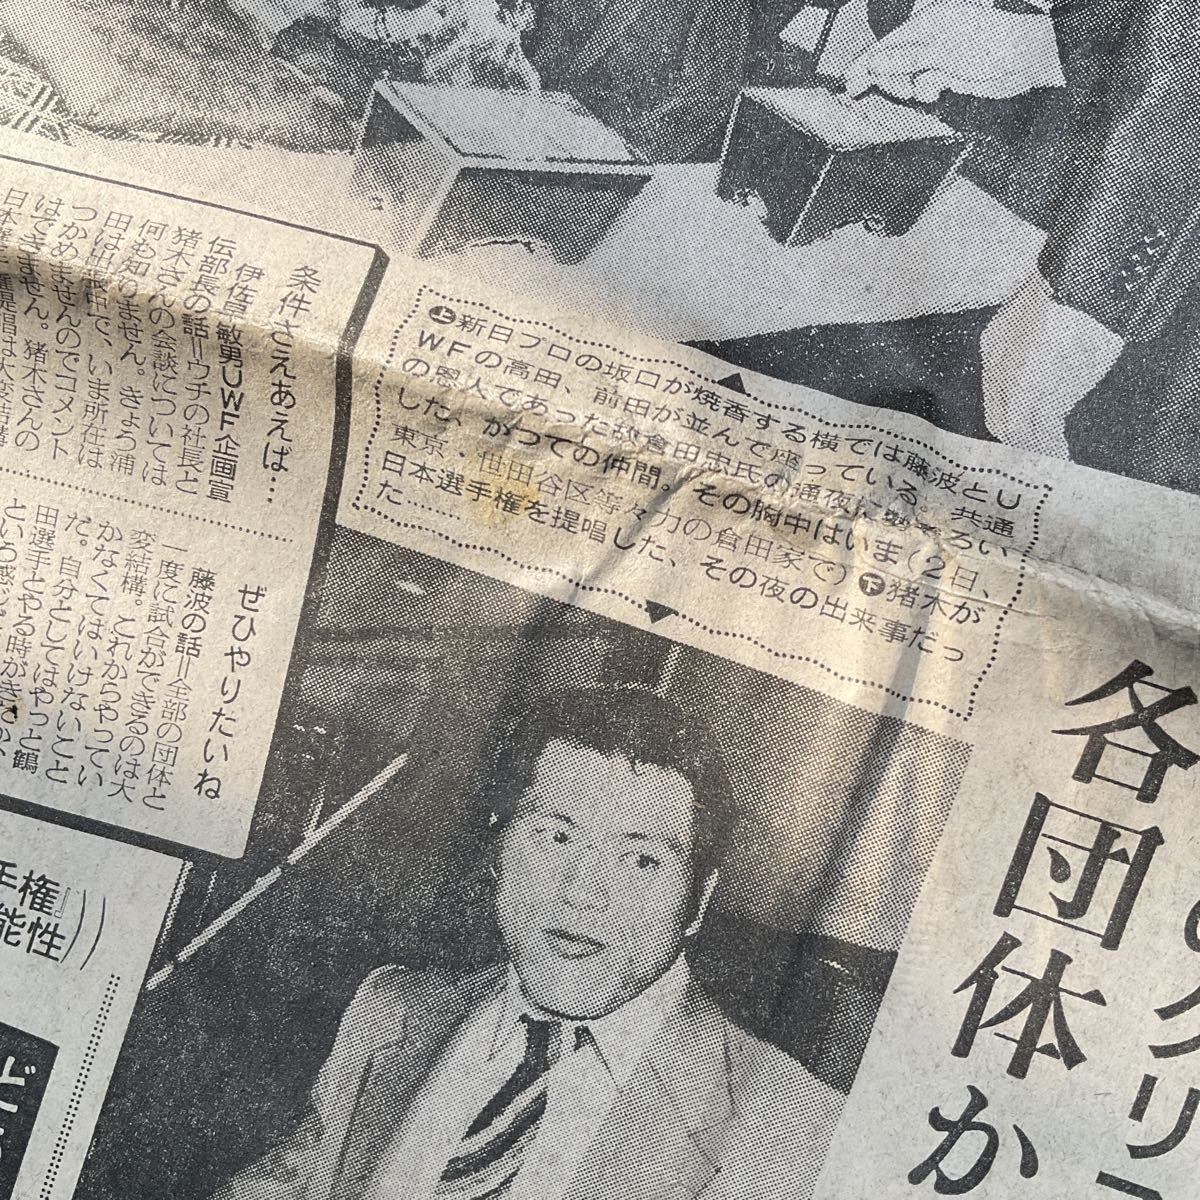 昭和レトロ 東京スポーツ 昭和59年 1984年10月4日 東スポ 猪木 全日プロ 新日プロ UWF 新日興行 東スポ 古新聞の画像8